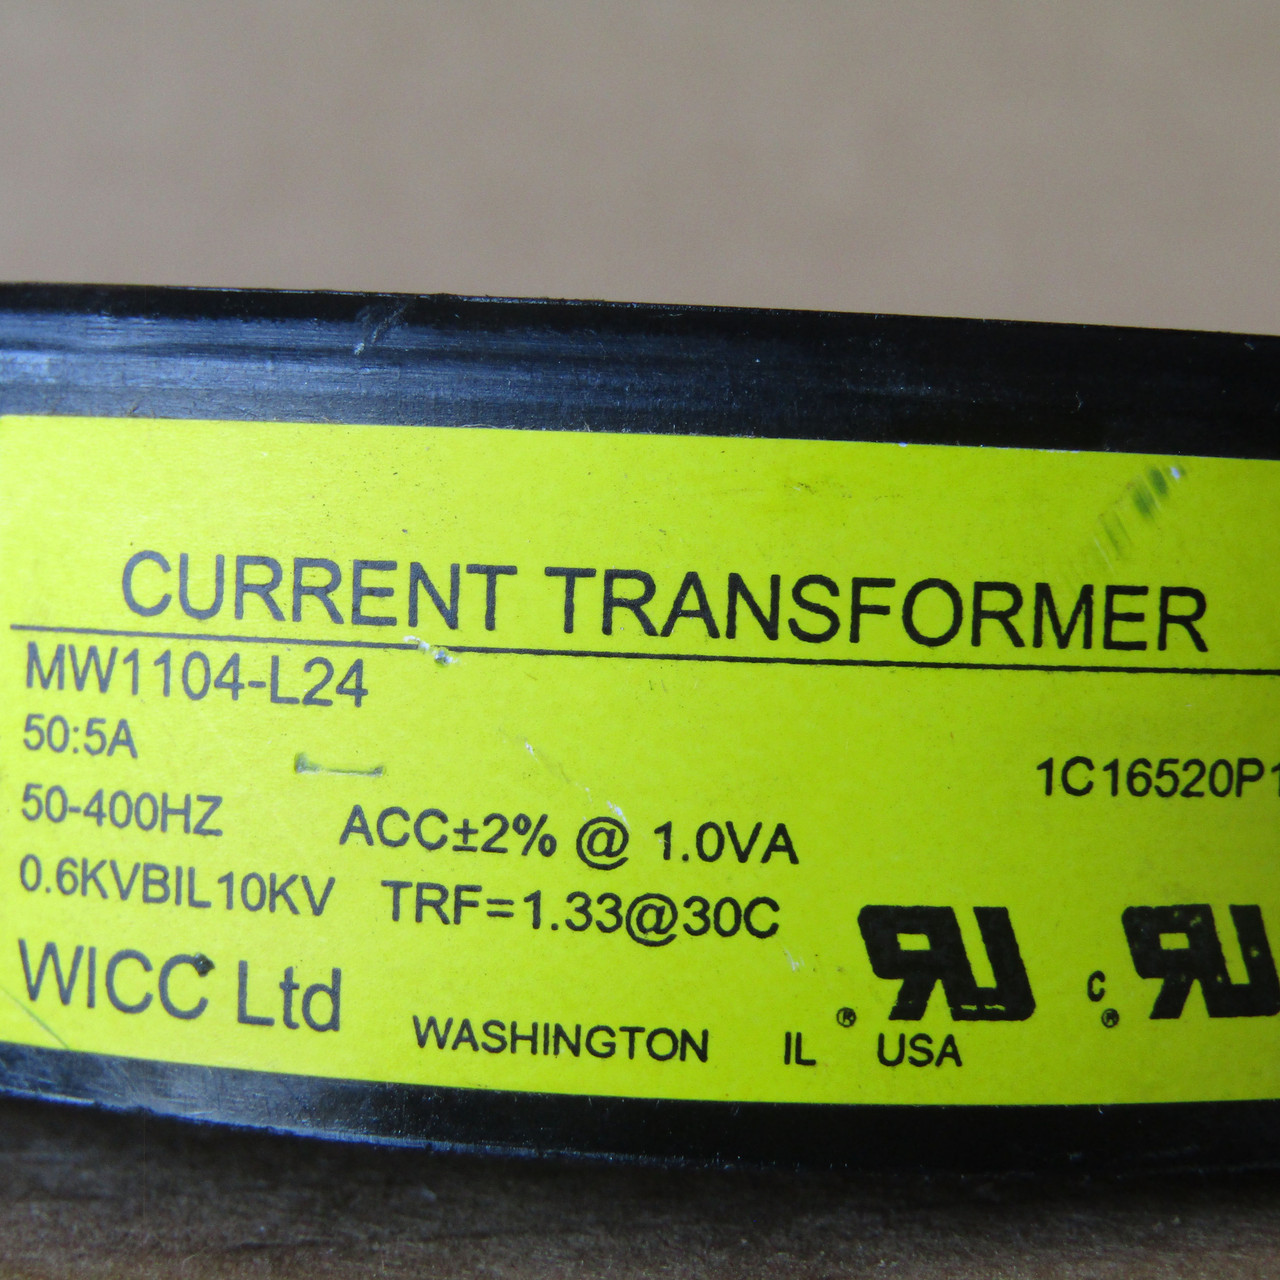 WICC Ltd MW1104-L24 Current Transformer 50:5A 50-400Hz - Used